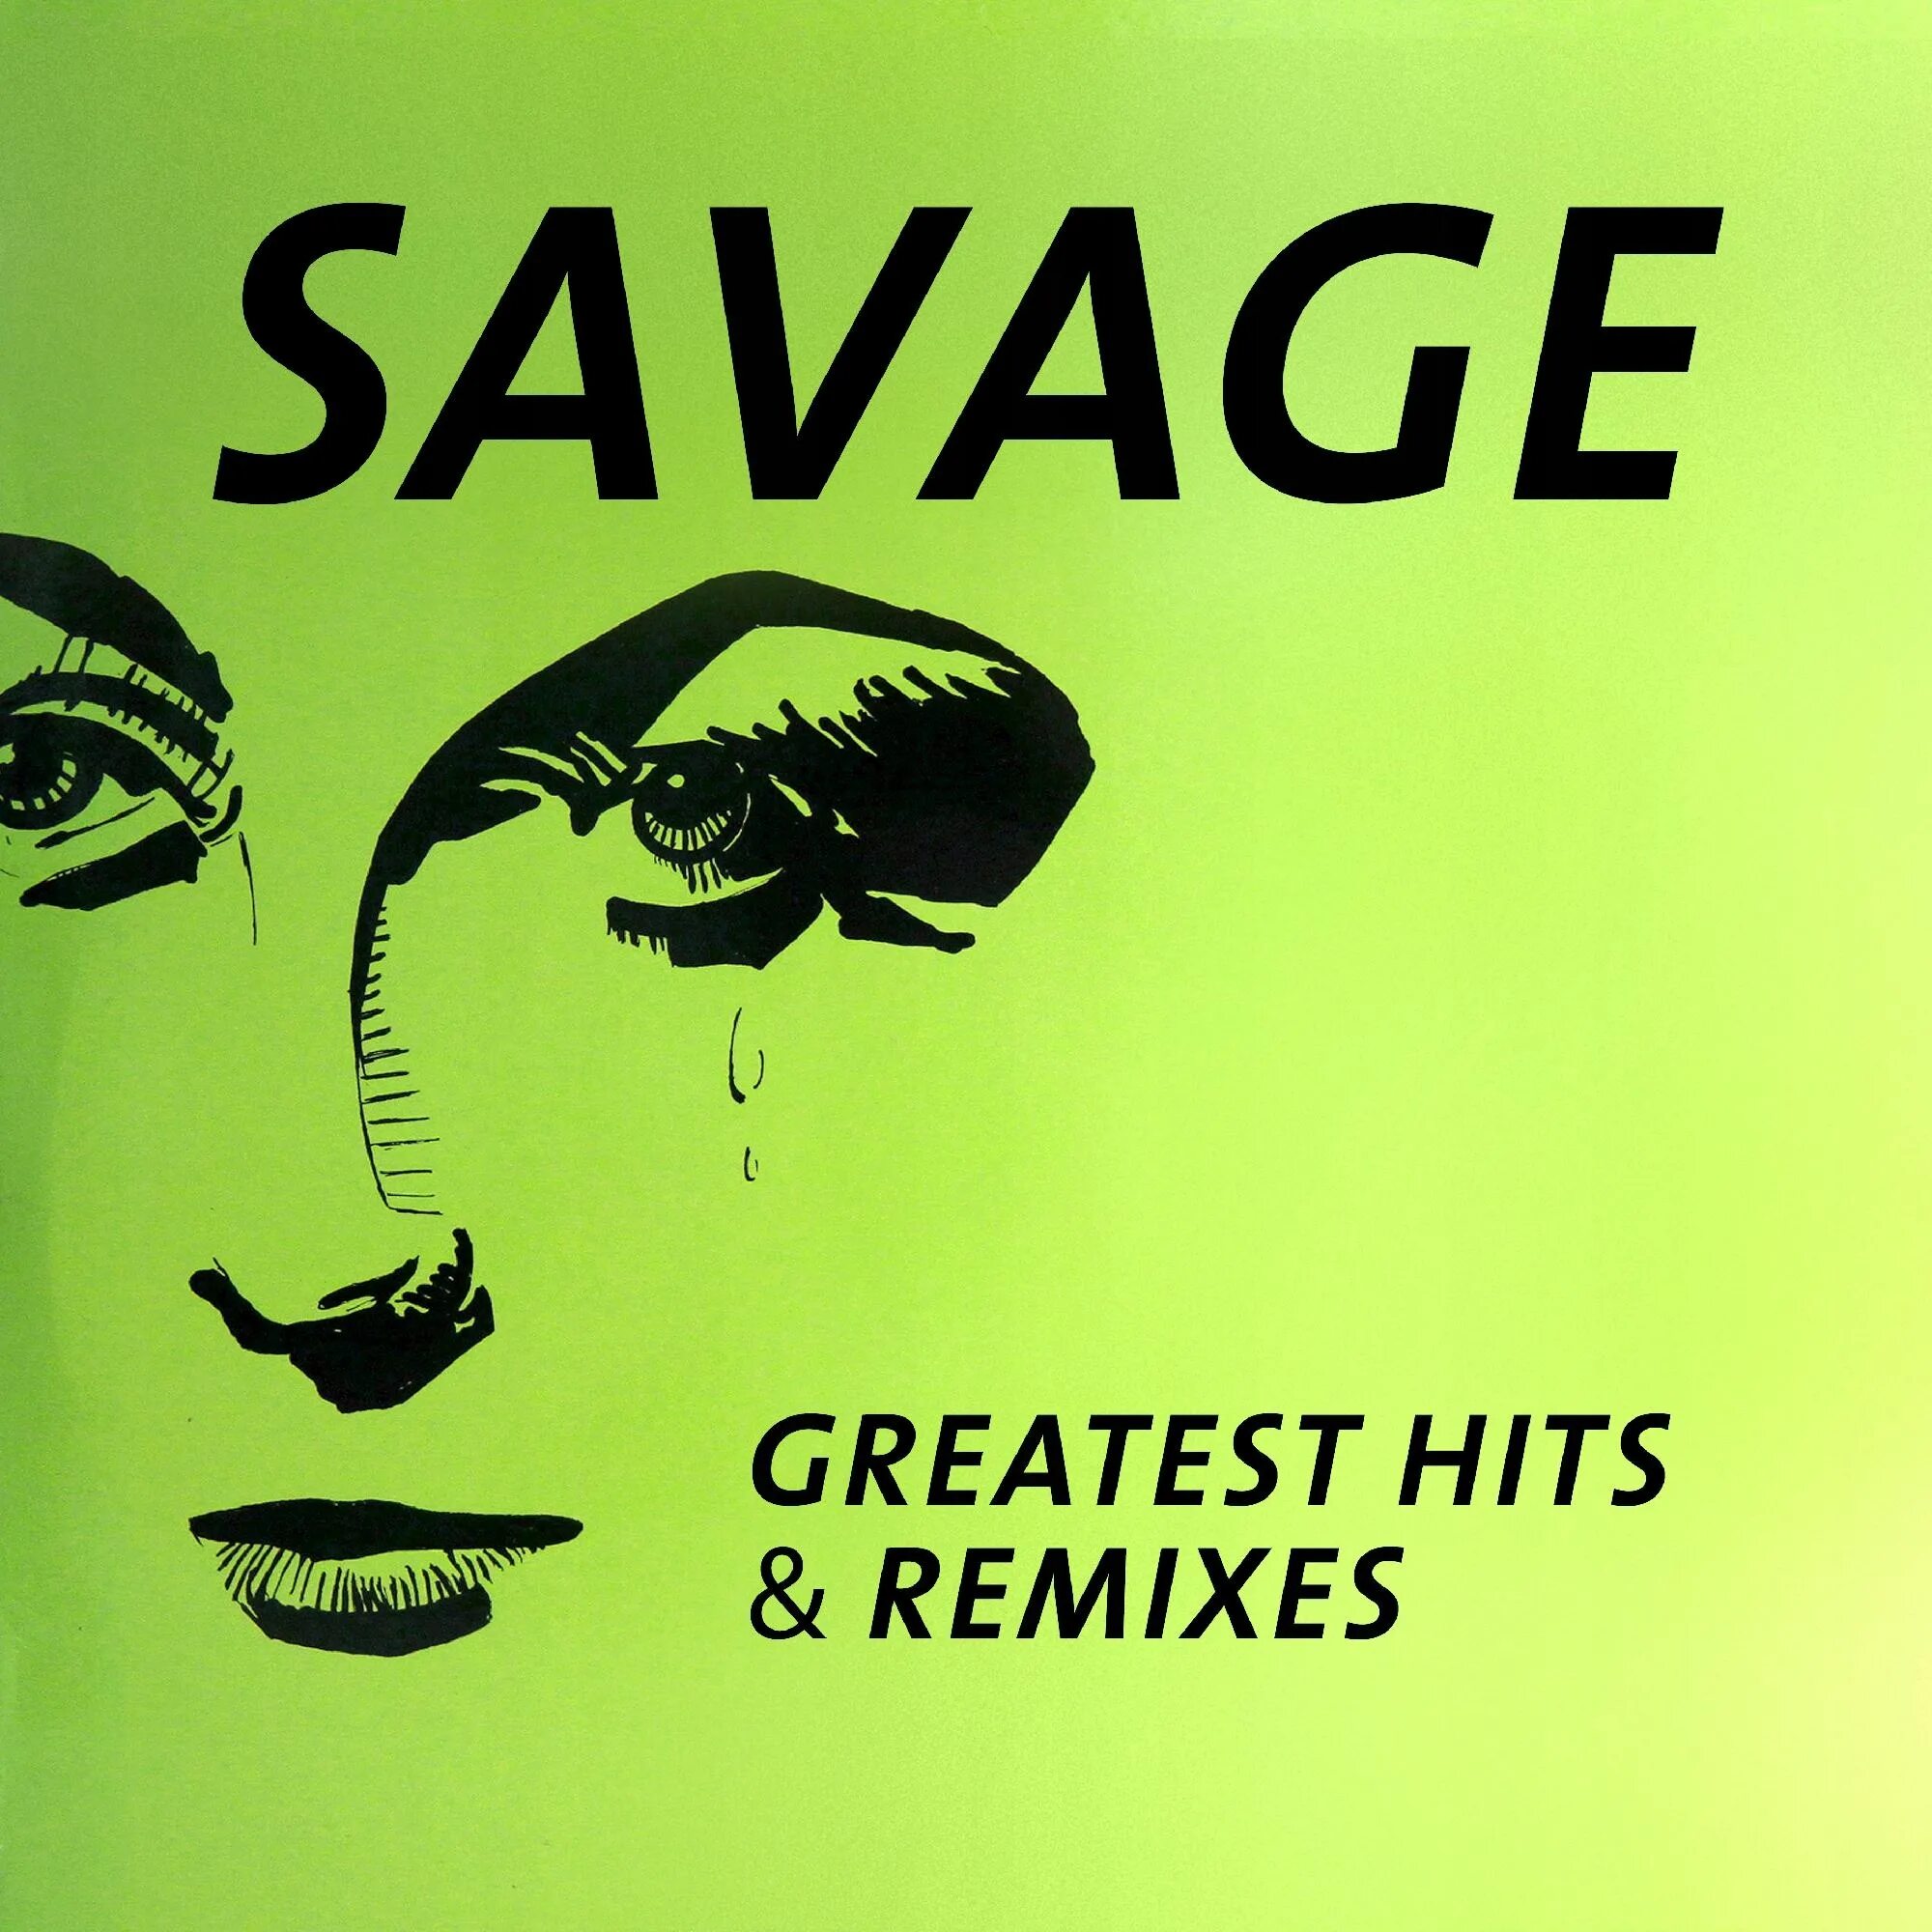 Savage Greatest Hits 1989. Savage - Greatest Hits & Remixes. Savage Greatest Hits Remixes 2016. Savage обложки альбомов. Песня radio version